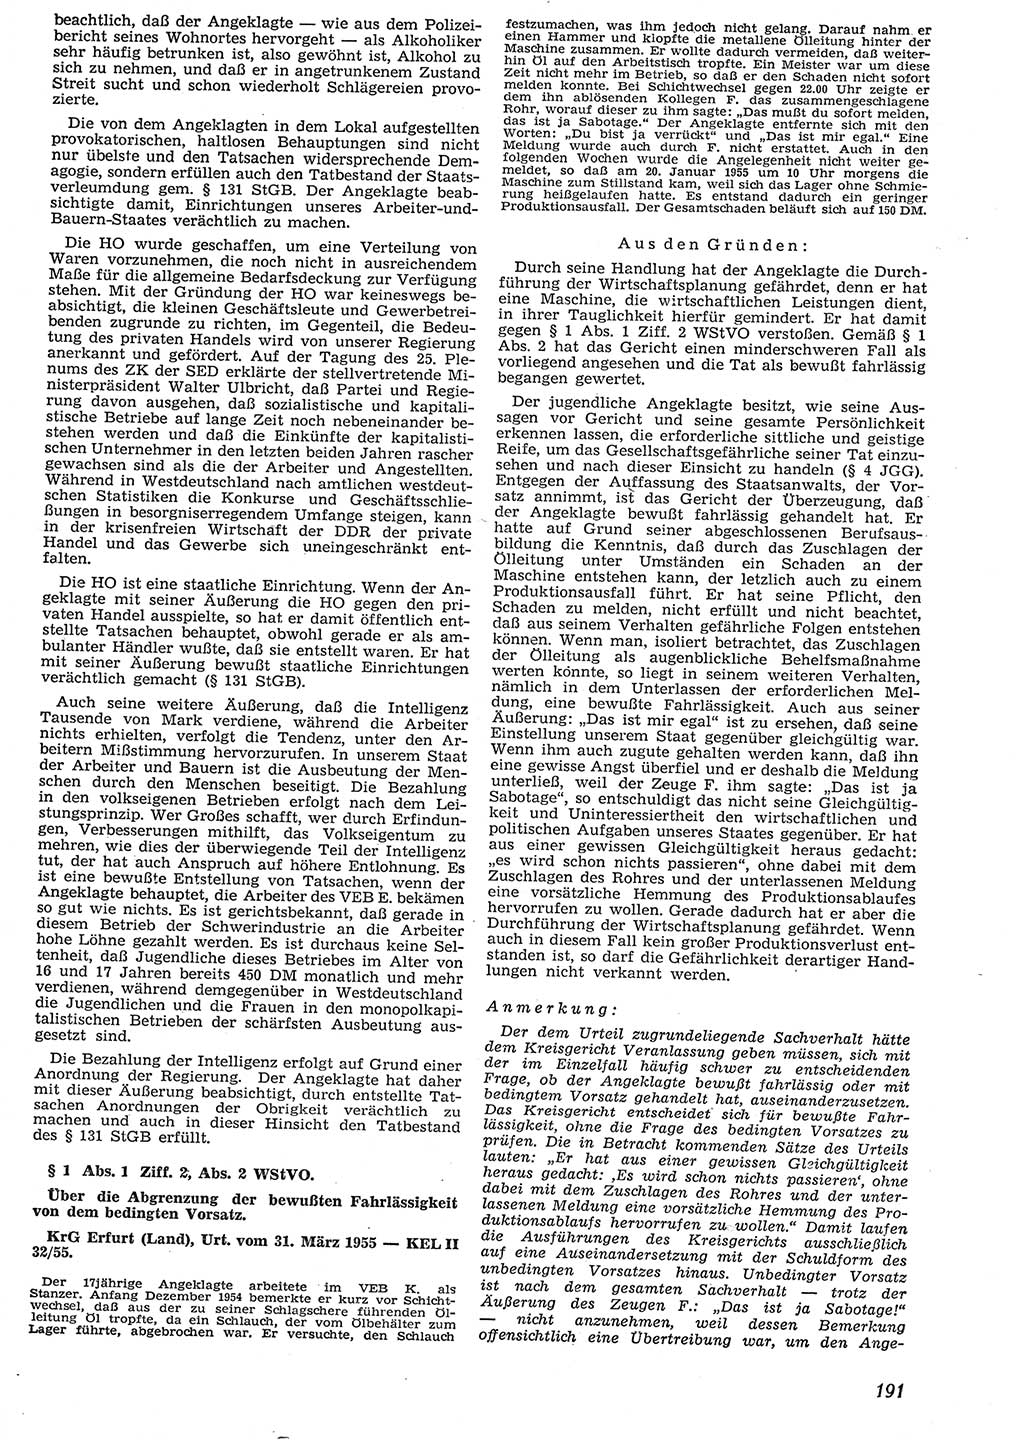 Neue Justiz (NJ), Zeitschrift für Recht und Rechtswissenschaft [Deutsche Demokratische Republik (DDR)], 10. Jahrgang 1956, Seite 191 (NJ DDR 1956, S. 191)